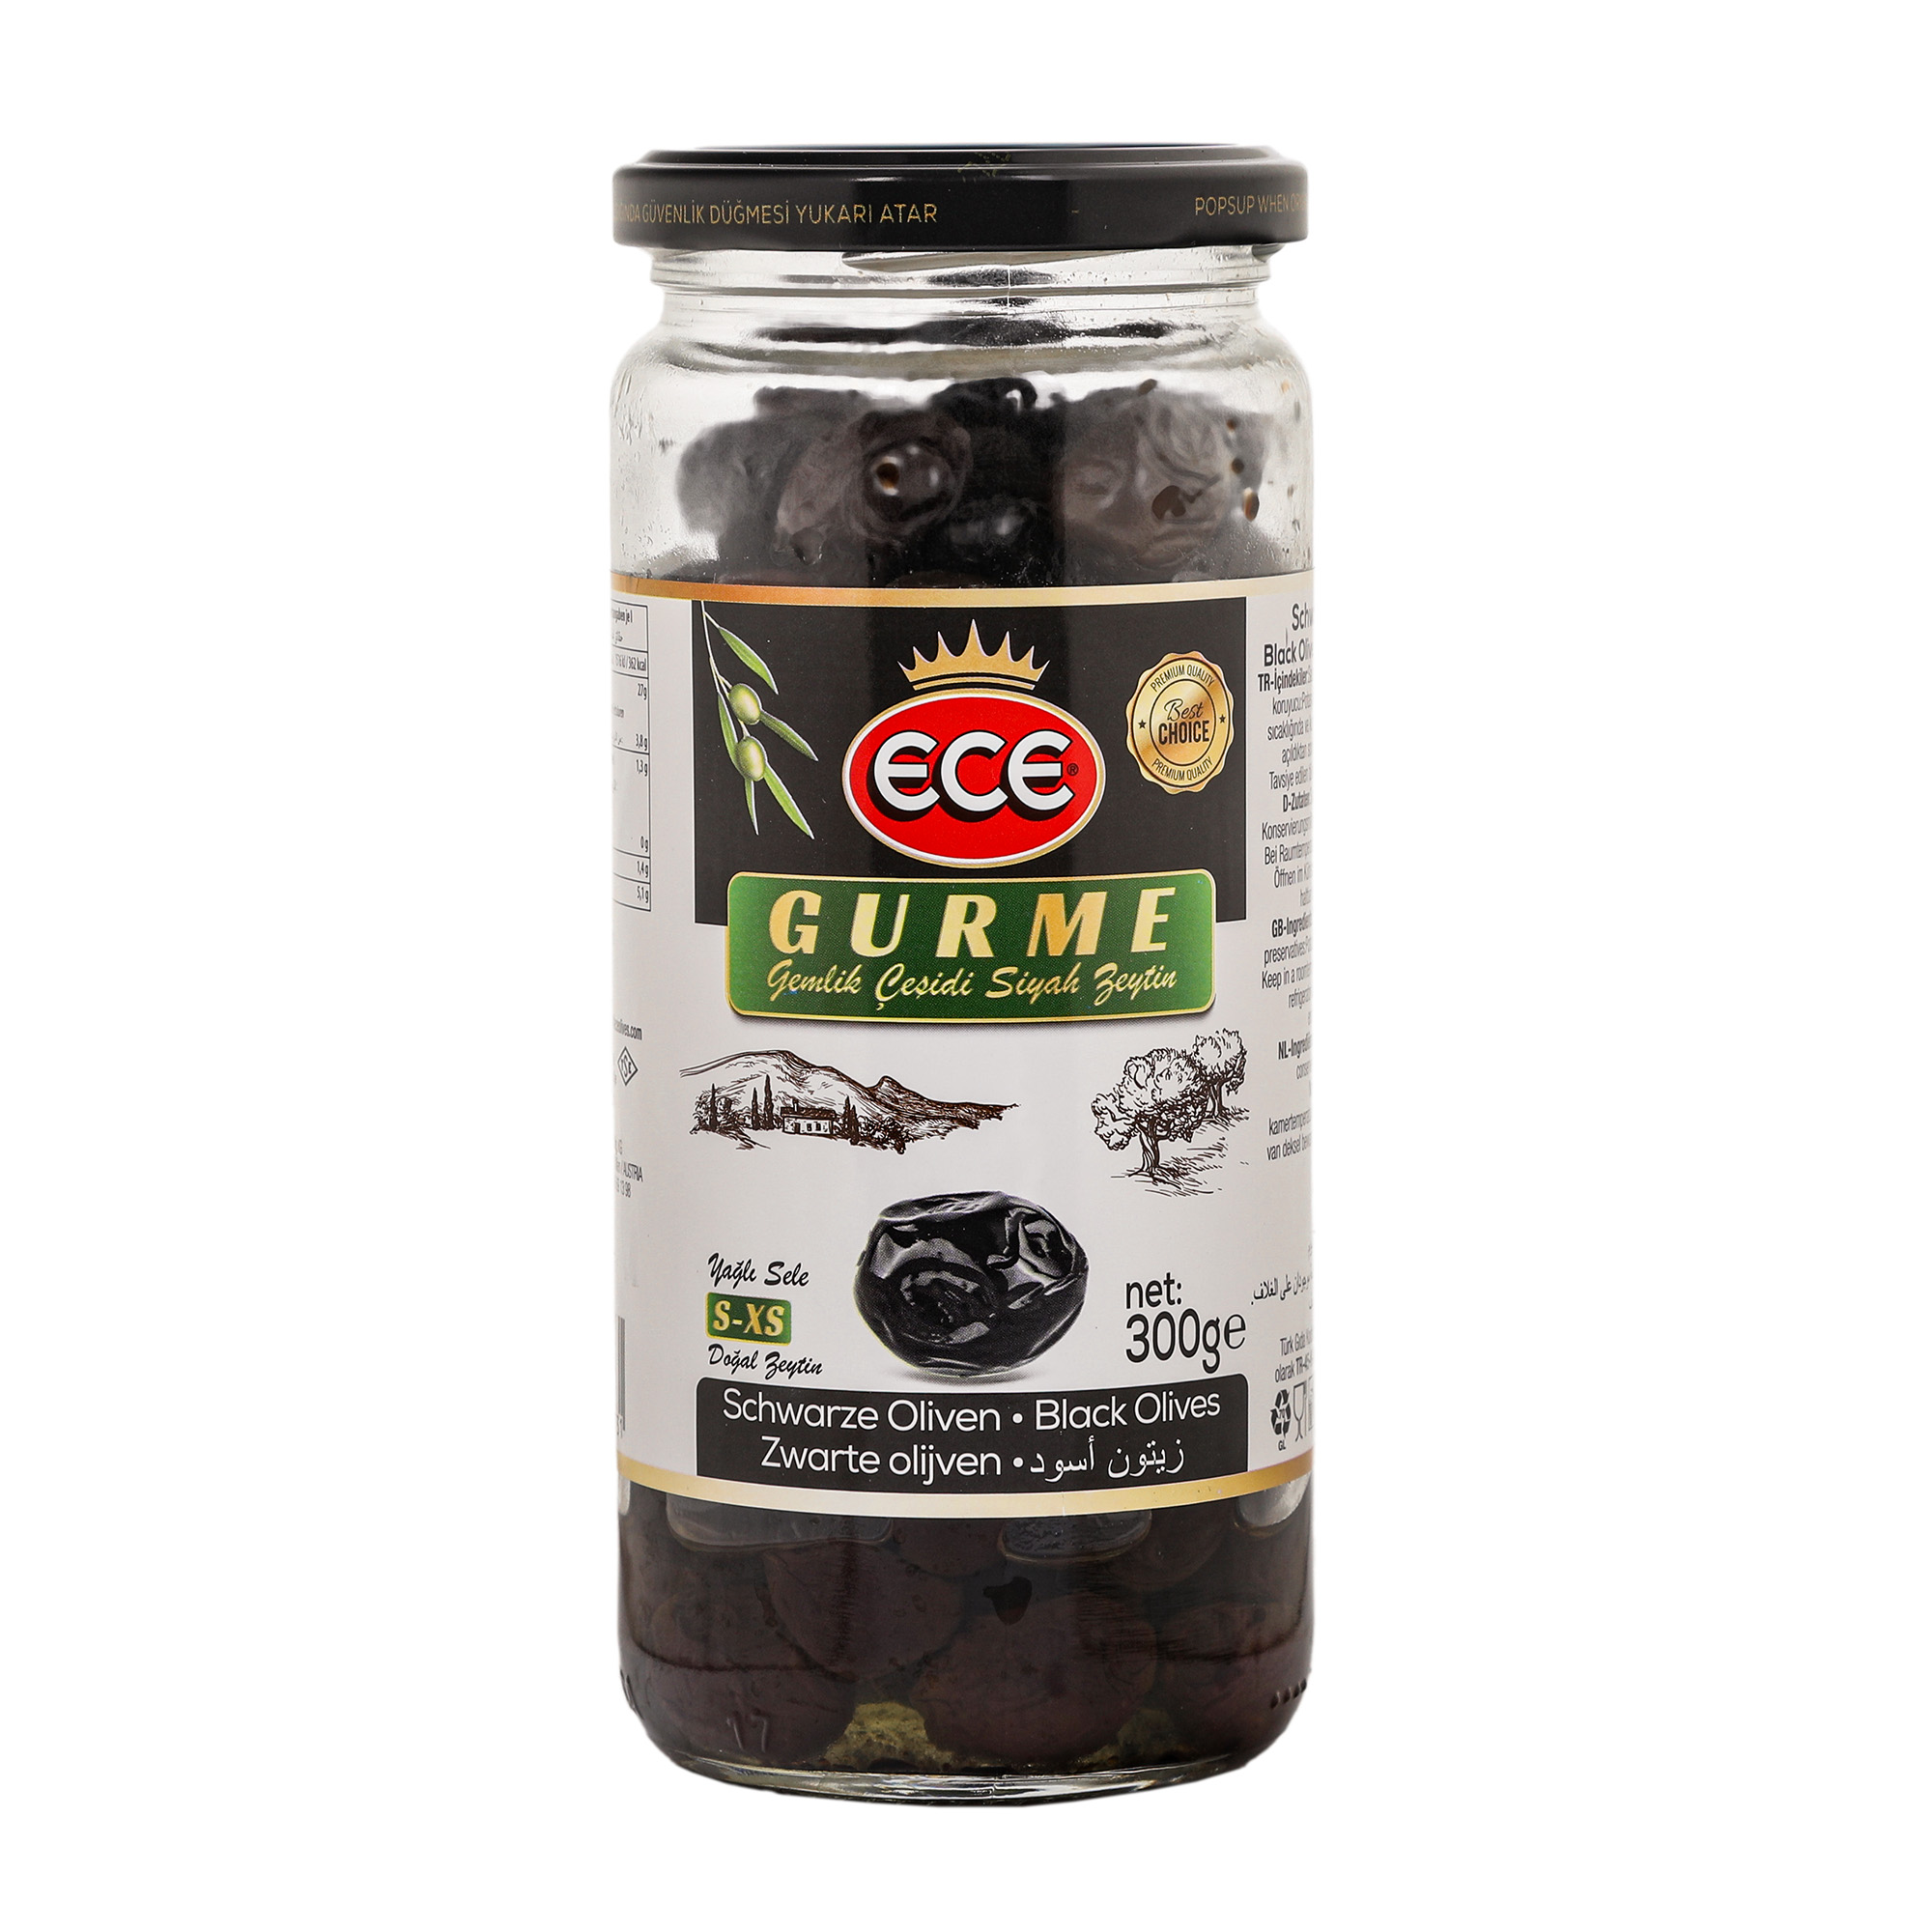 Оливки черные Ece Gurme в масле с косточкой, 300 г оливки черные ece без косточки 300 г